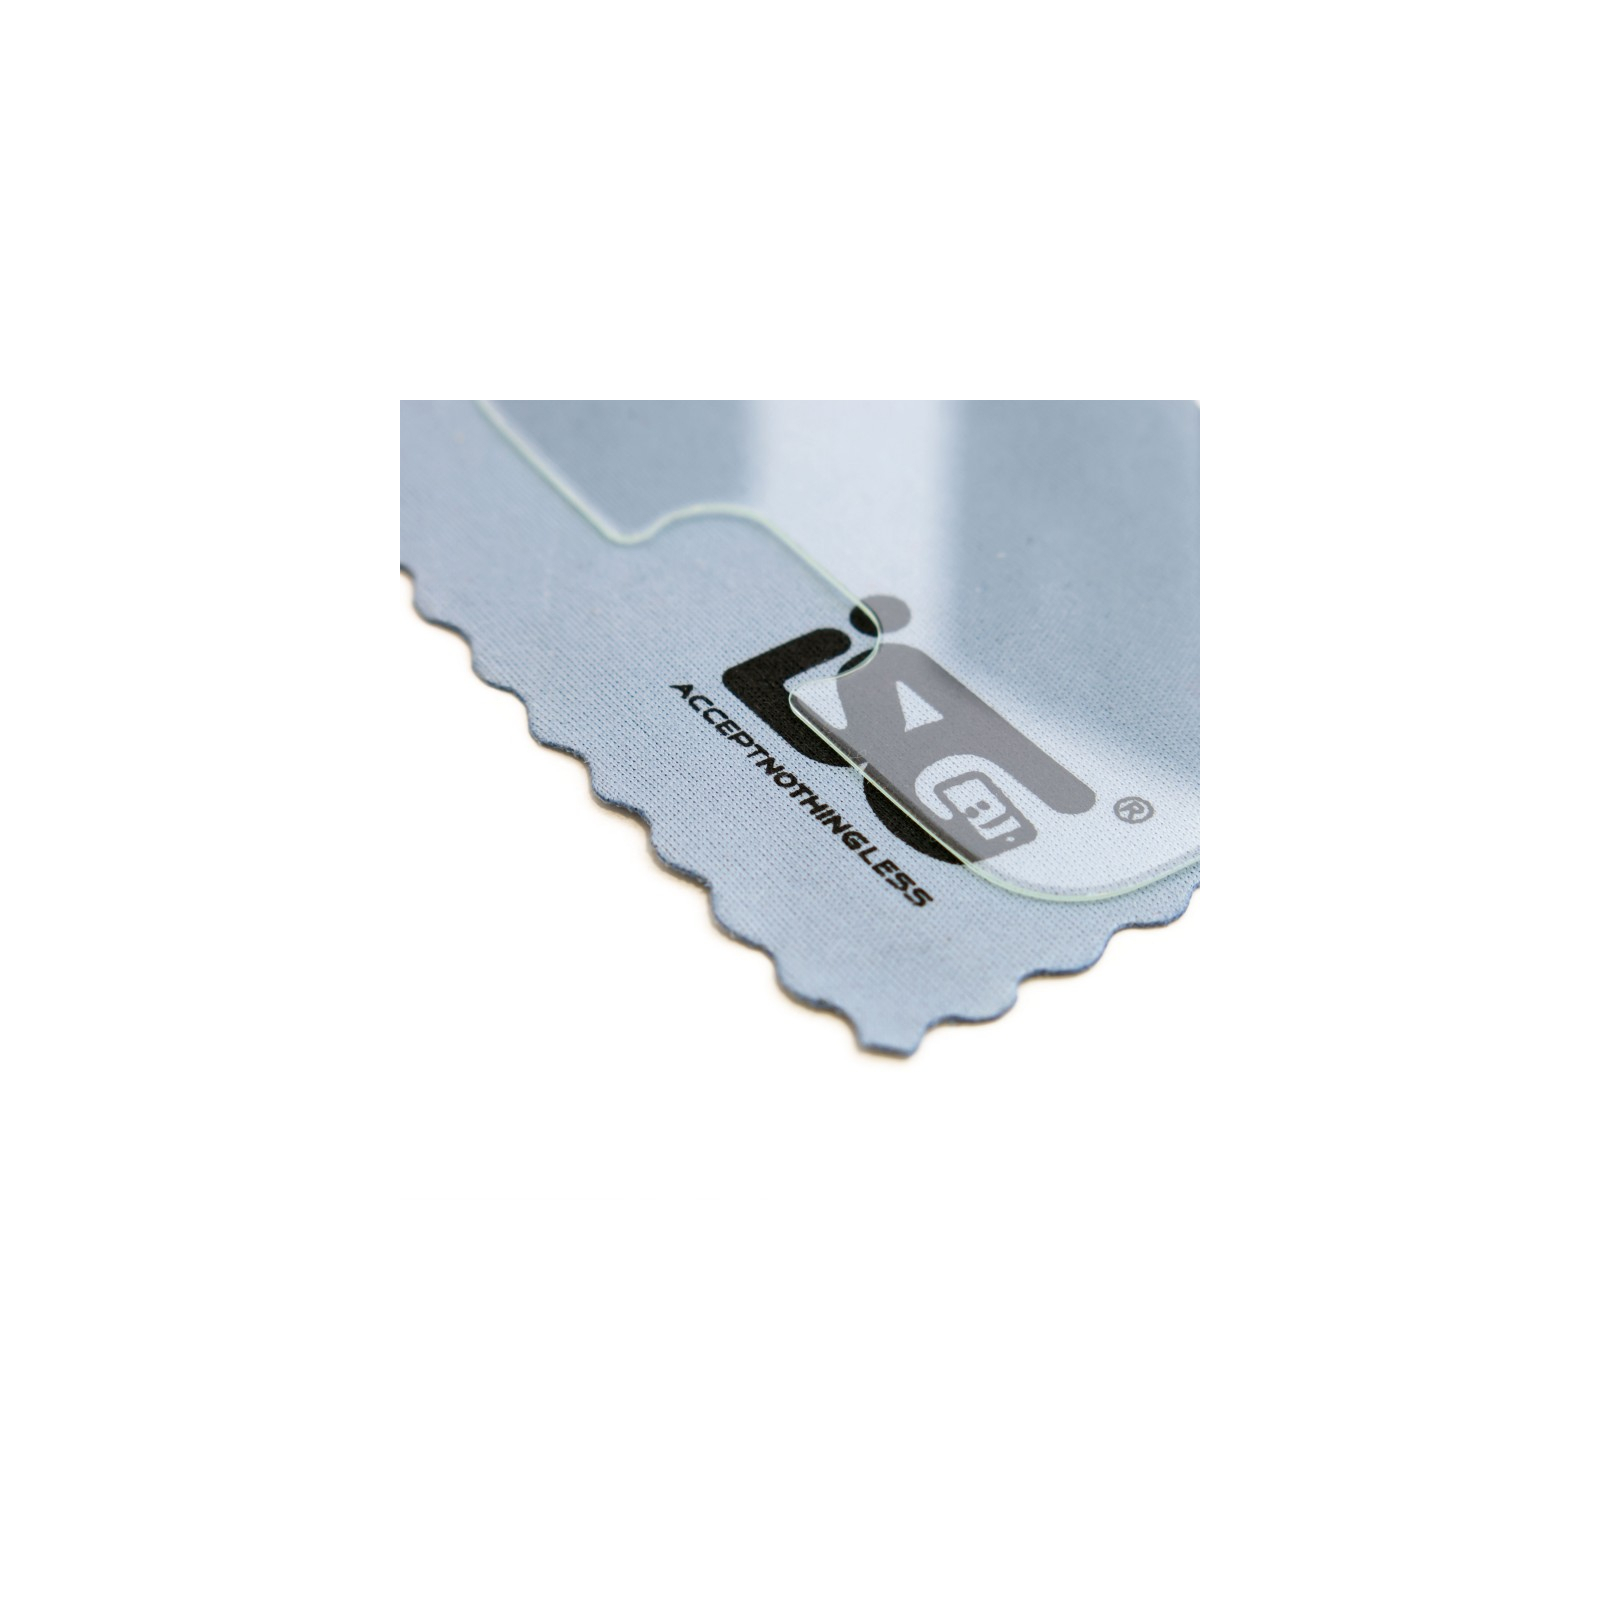 Скло захисне iSG Tempered Glass Pro для Apple iPhone 7 Plus (SPG4280) зображення 3